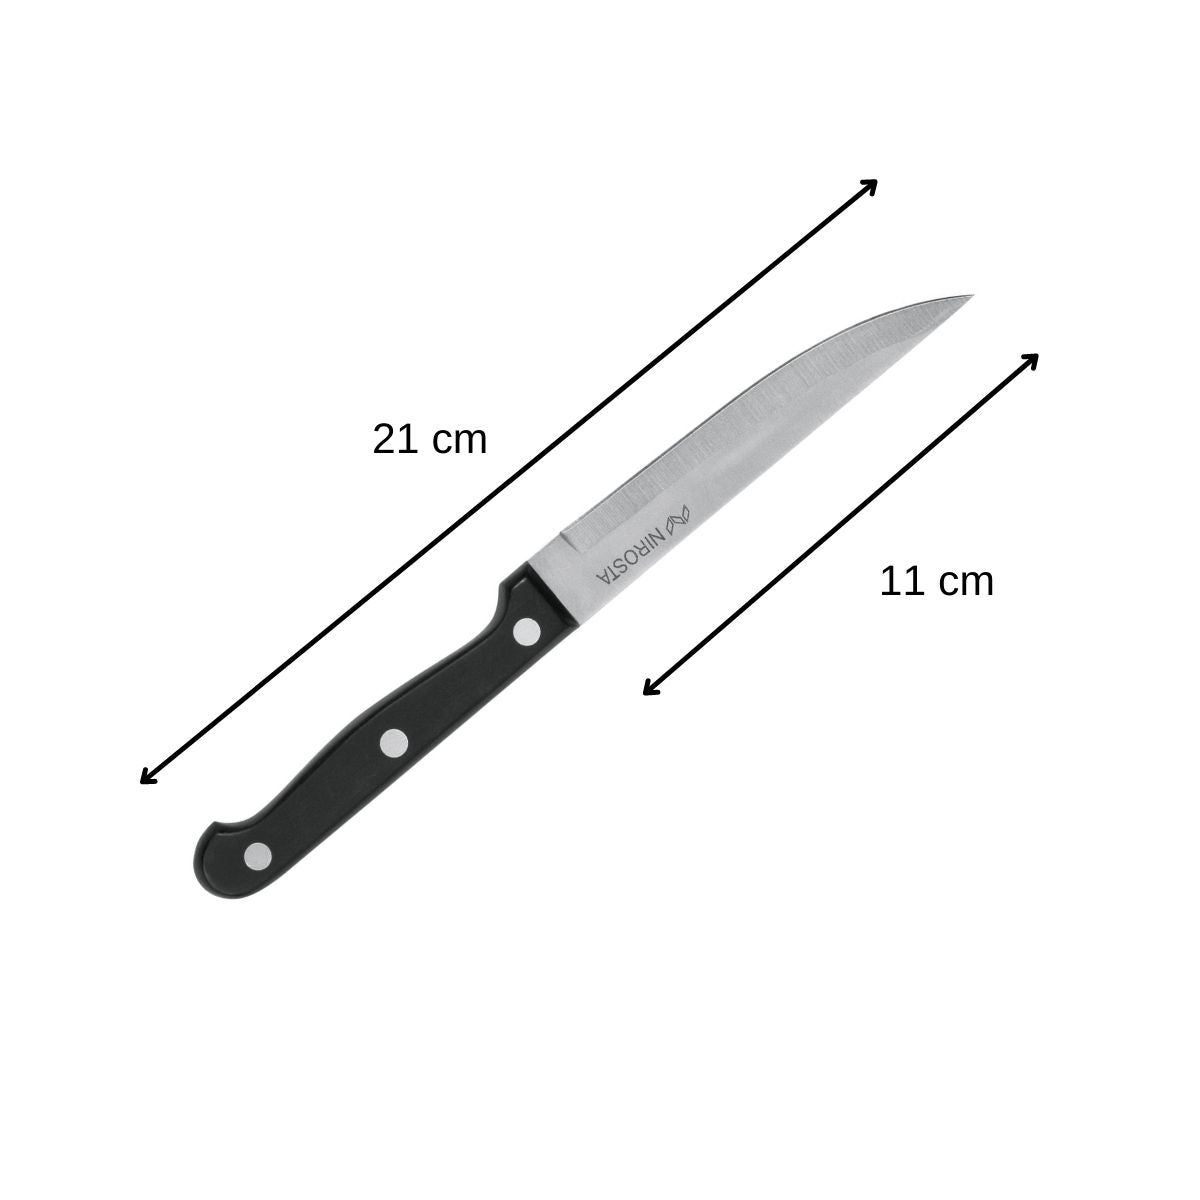 Couteau à steak Nirosta Mega 21 cm